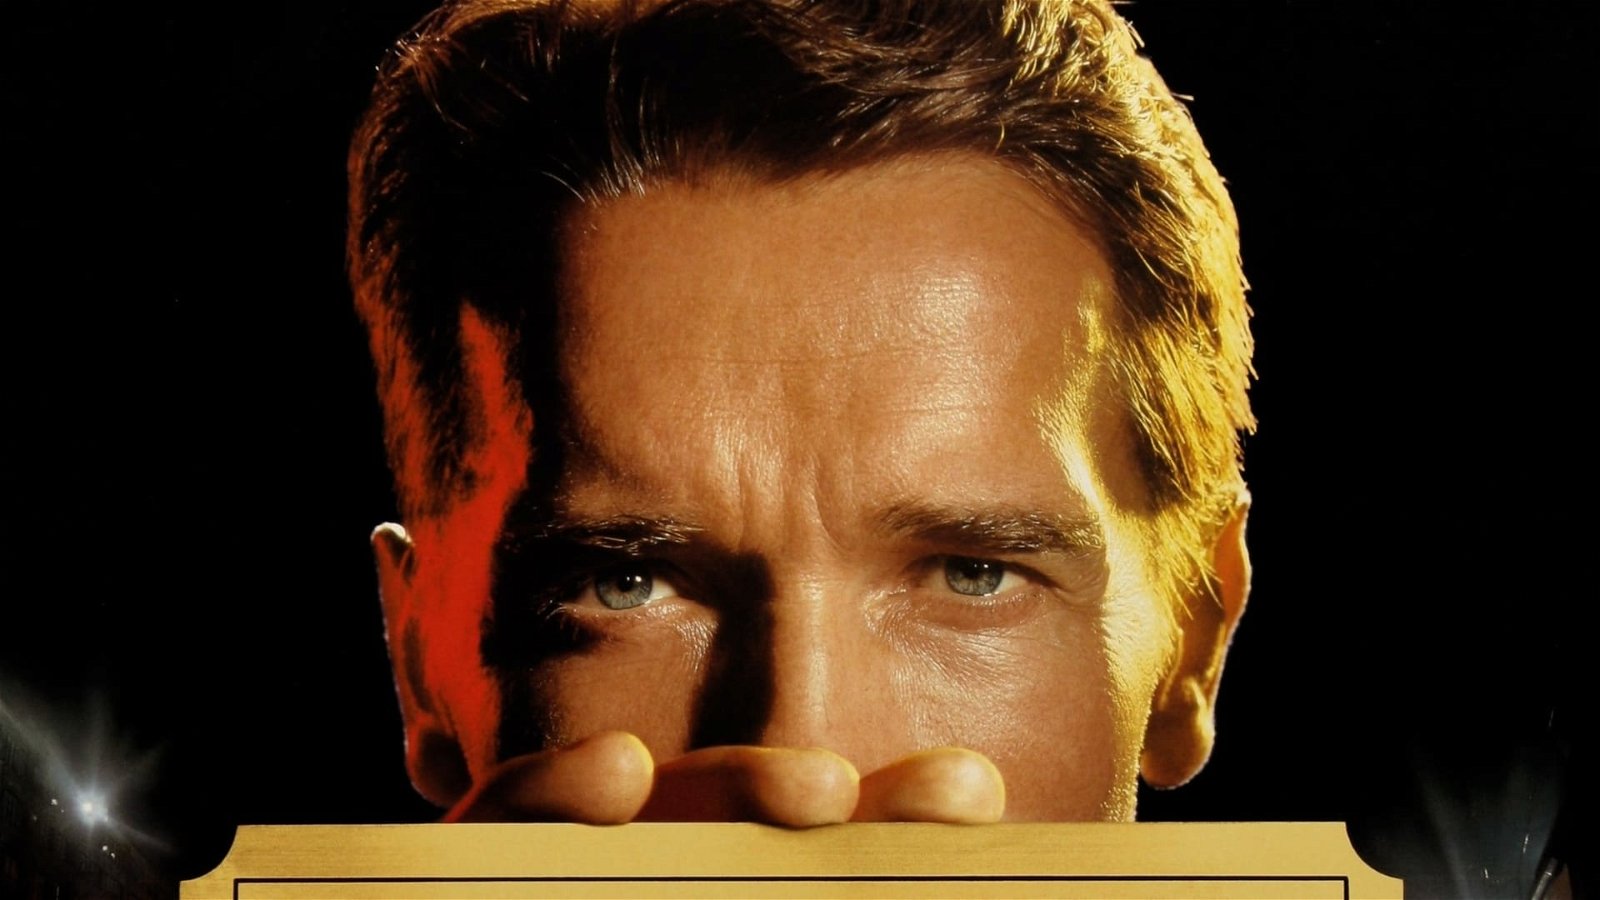 Arnold Schwarzenegger om sin mest underskattade roll: "En politisk attack"